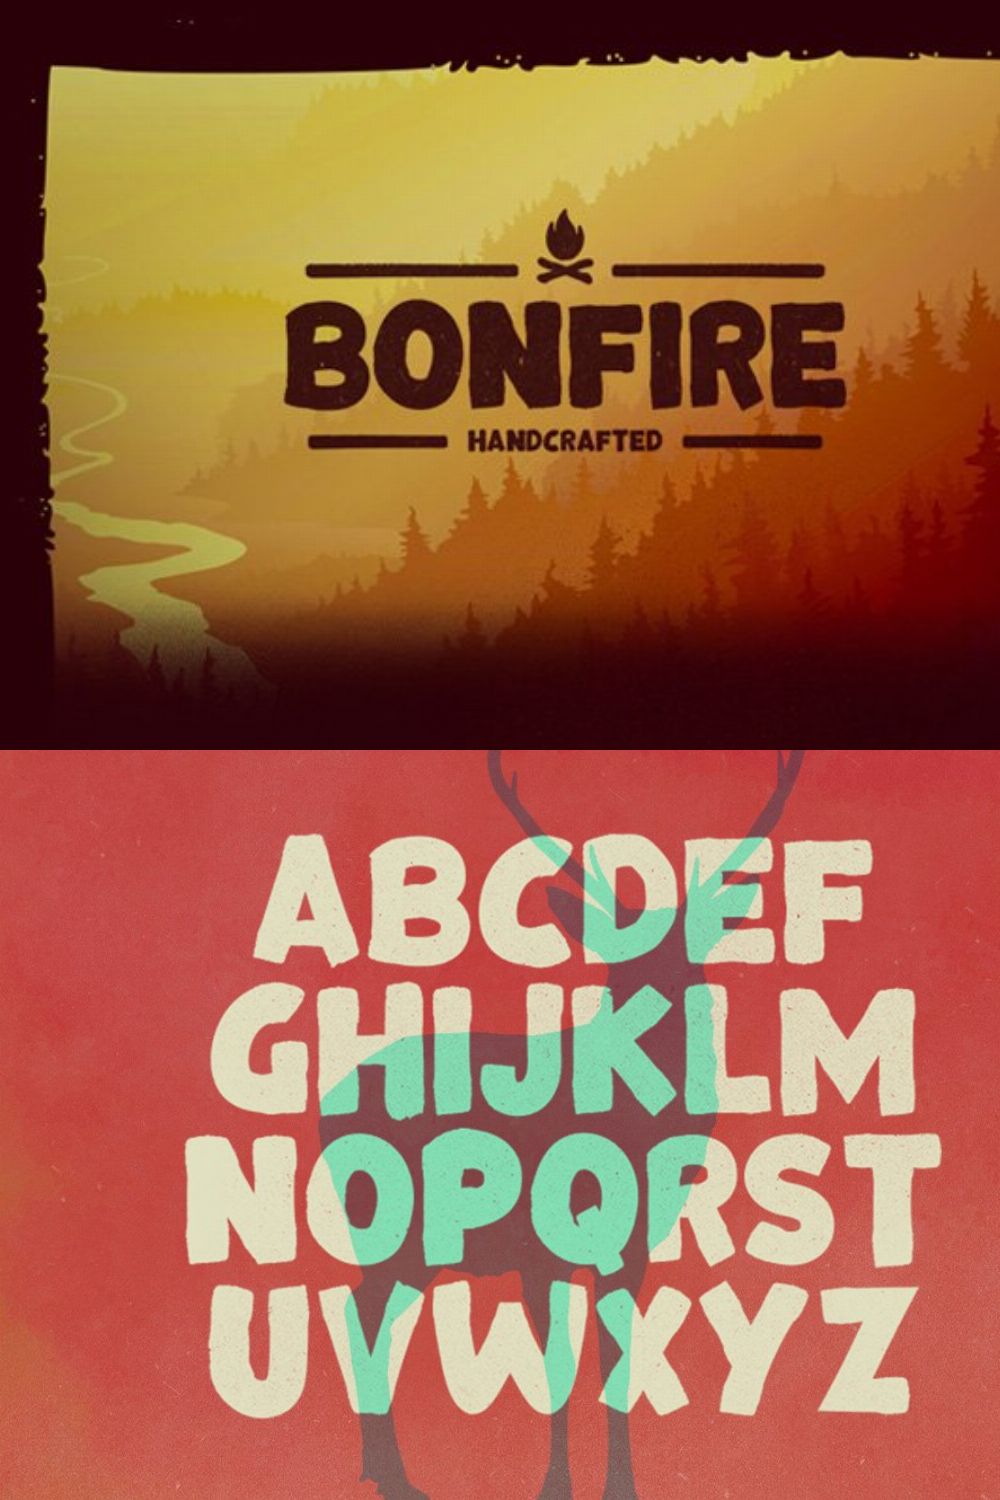 Bonfire Typeface pinterest preview image.